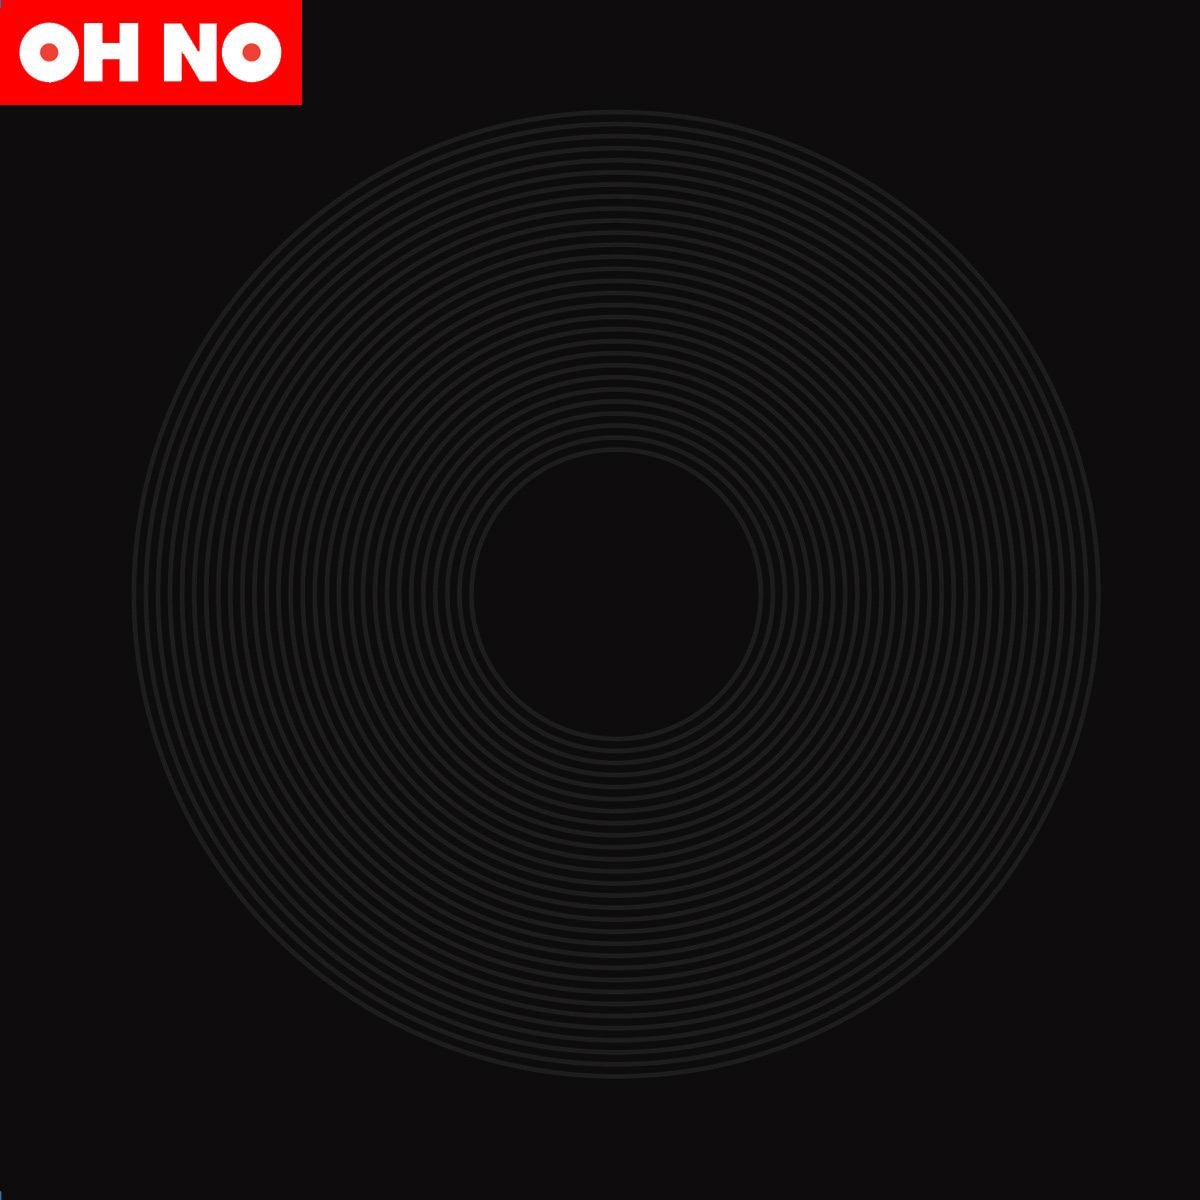 Oh No - Dr. No's Oxperiment (2007) [iTunes Match M4A]